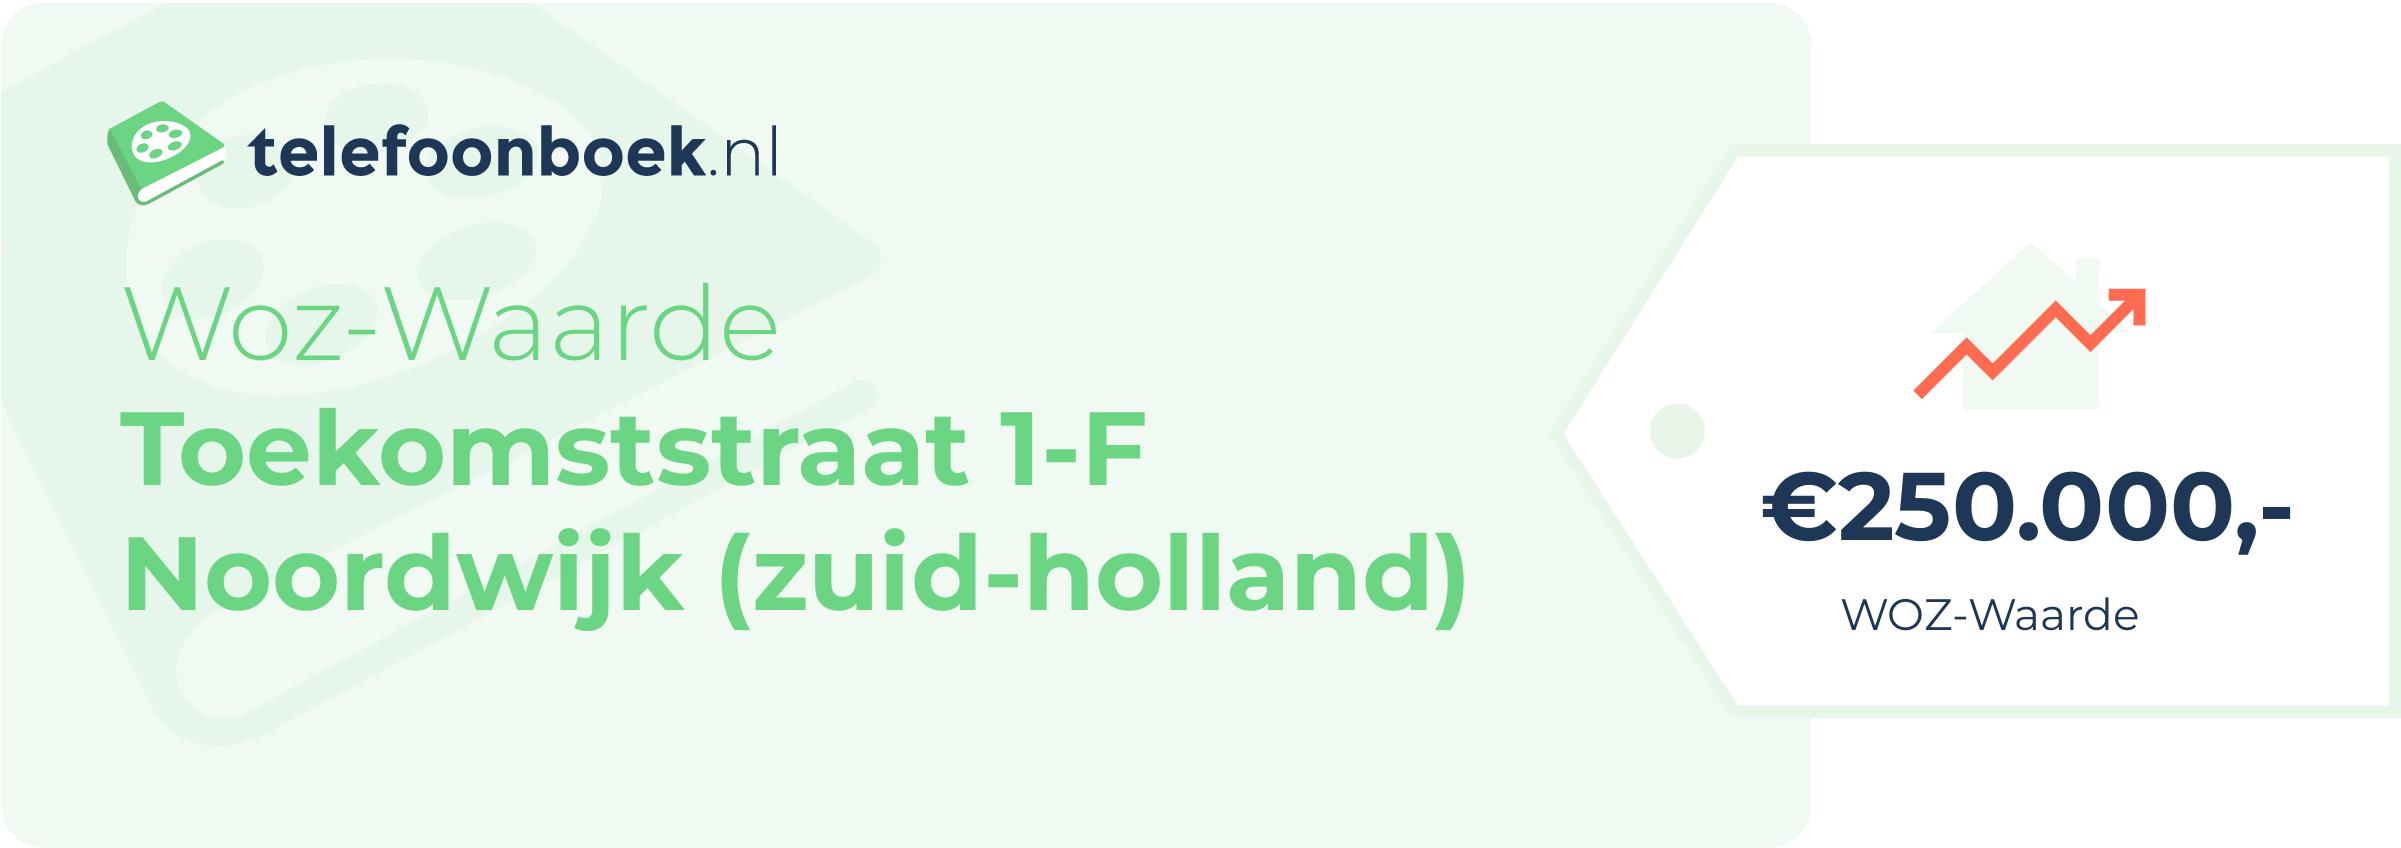 WOZ-waarde Toekomststraat 1-F Noordwijk (Zuid-Holland)